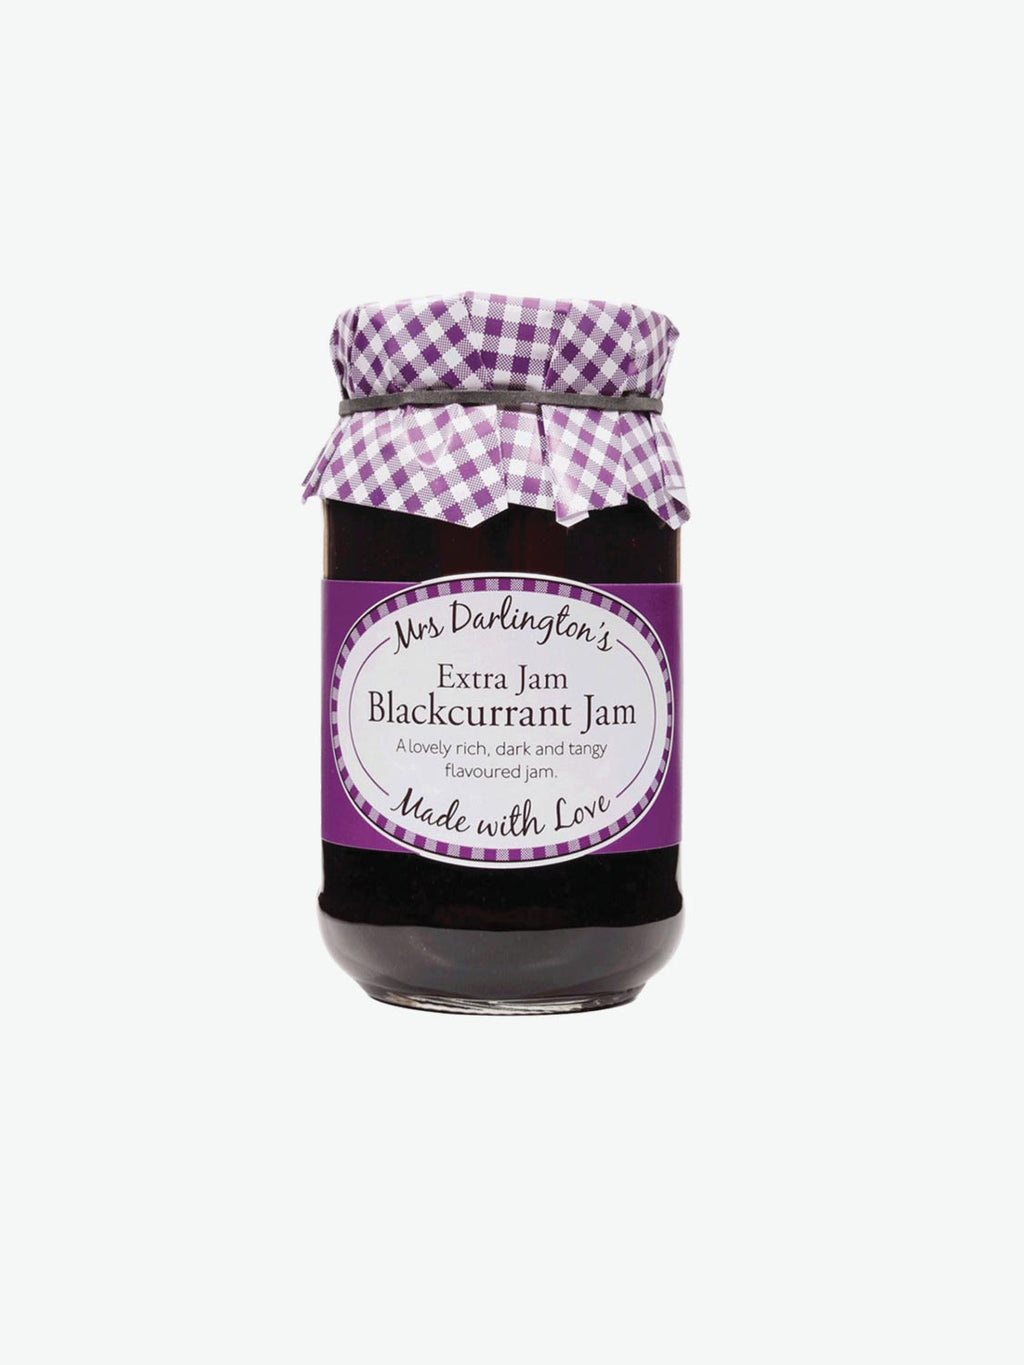 Mrs Darlington's Extra Jam Blackcurrant Jam | A